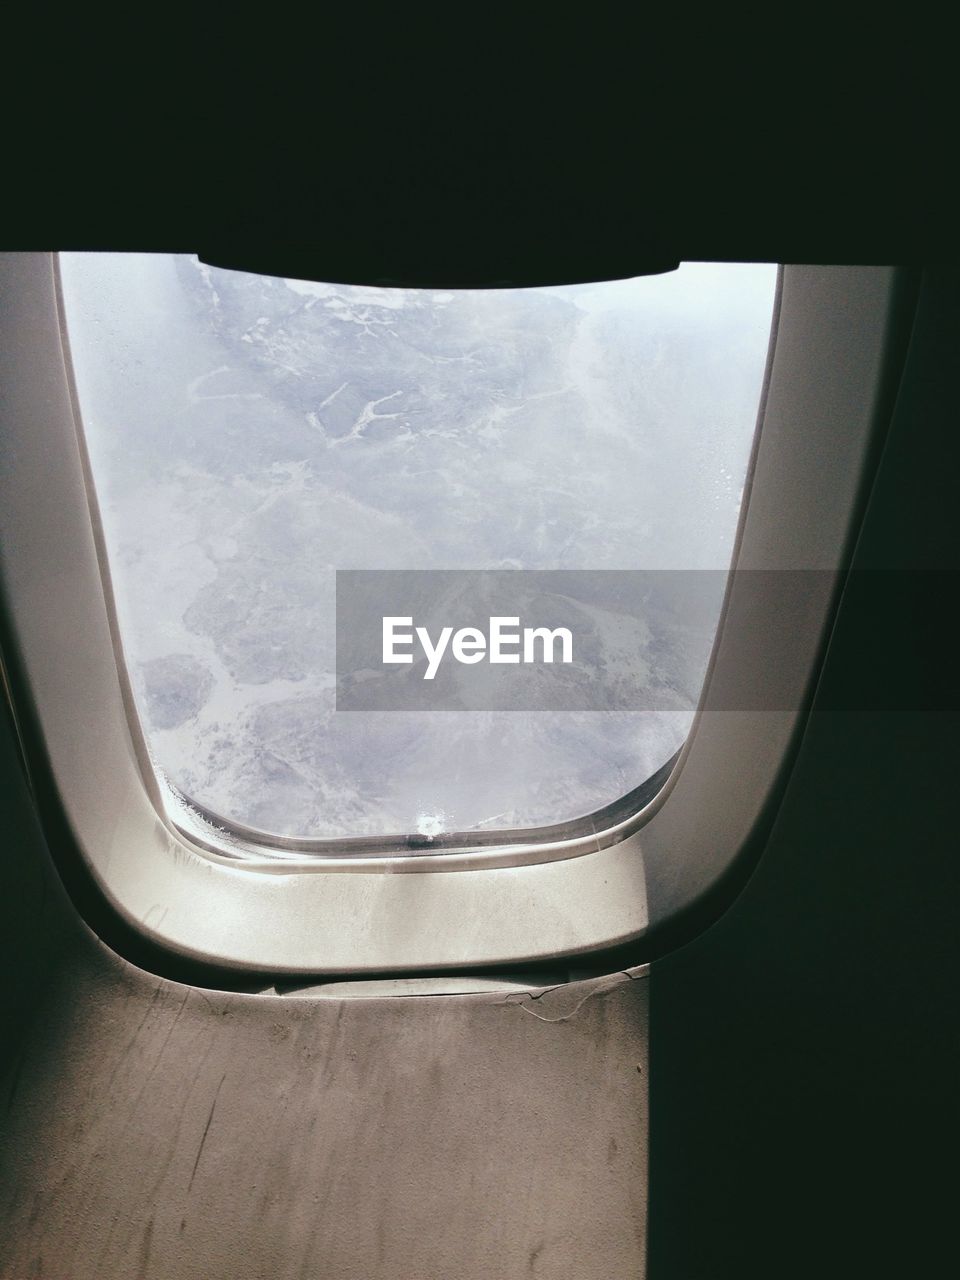 Mountains seen through airplane window